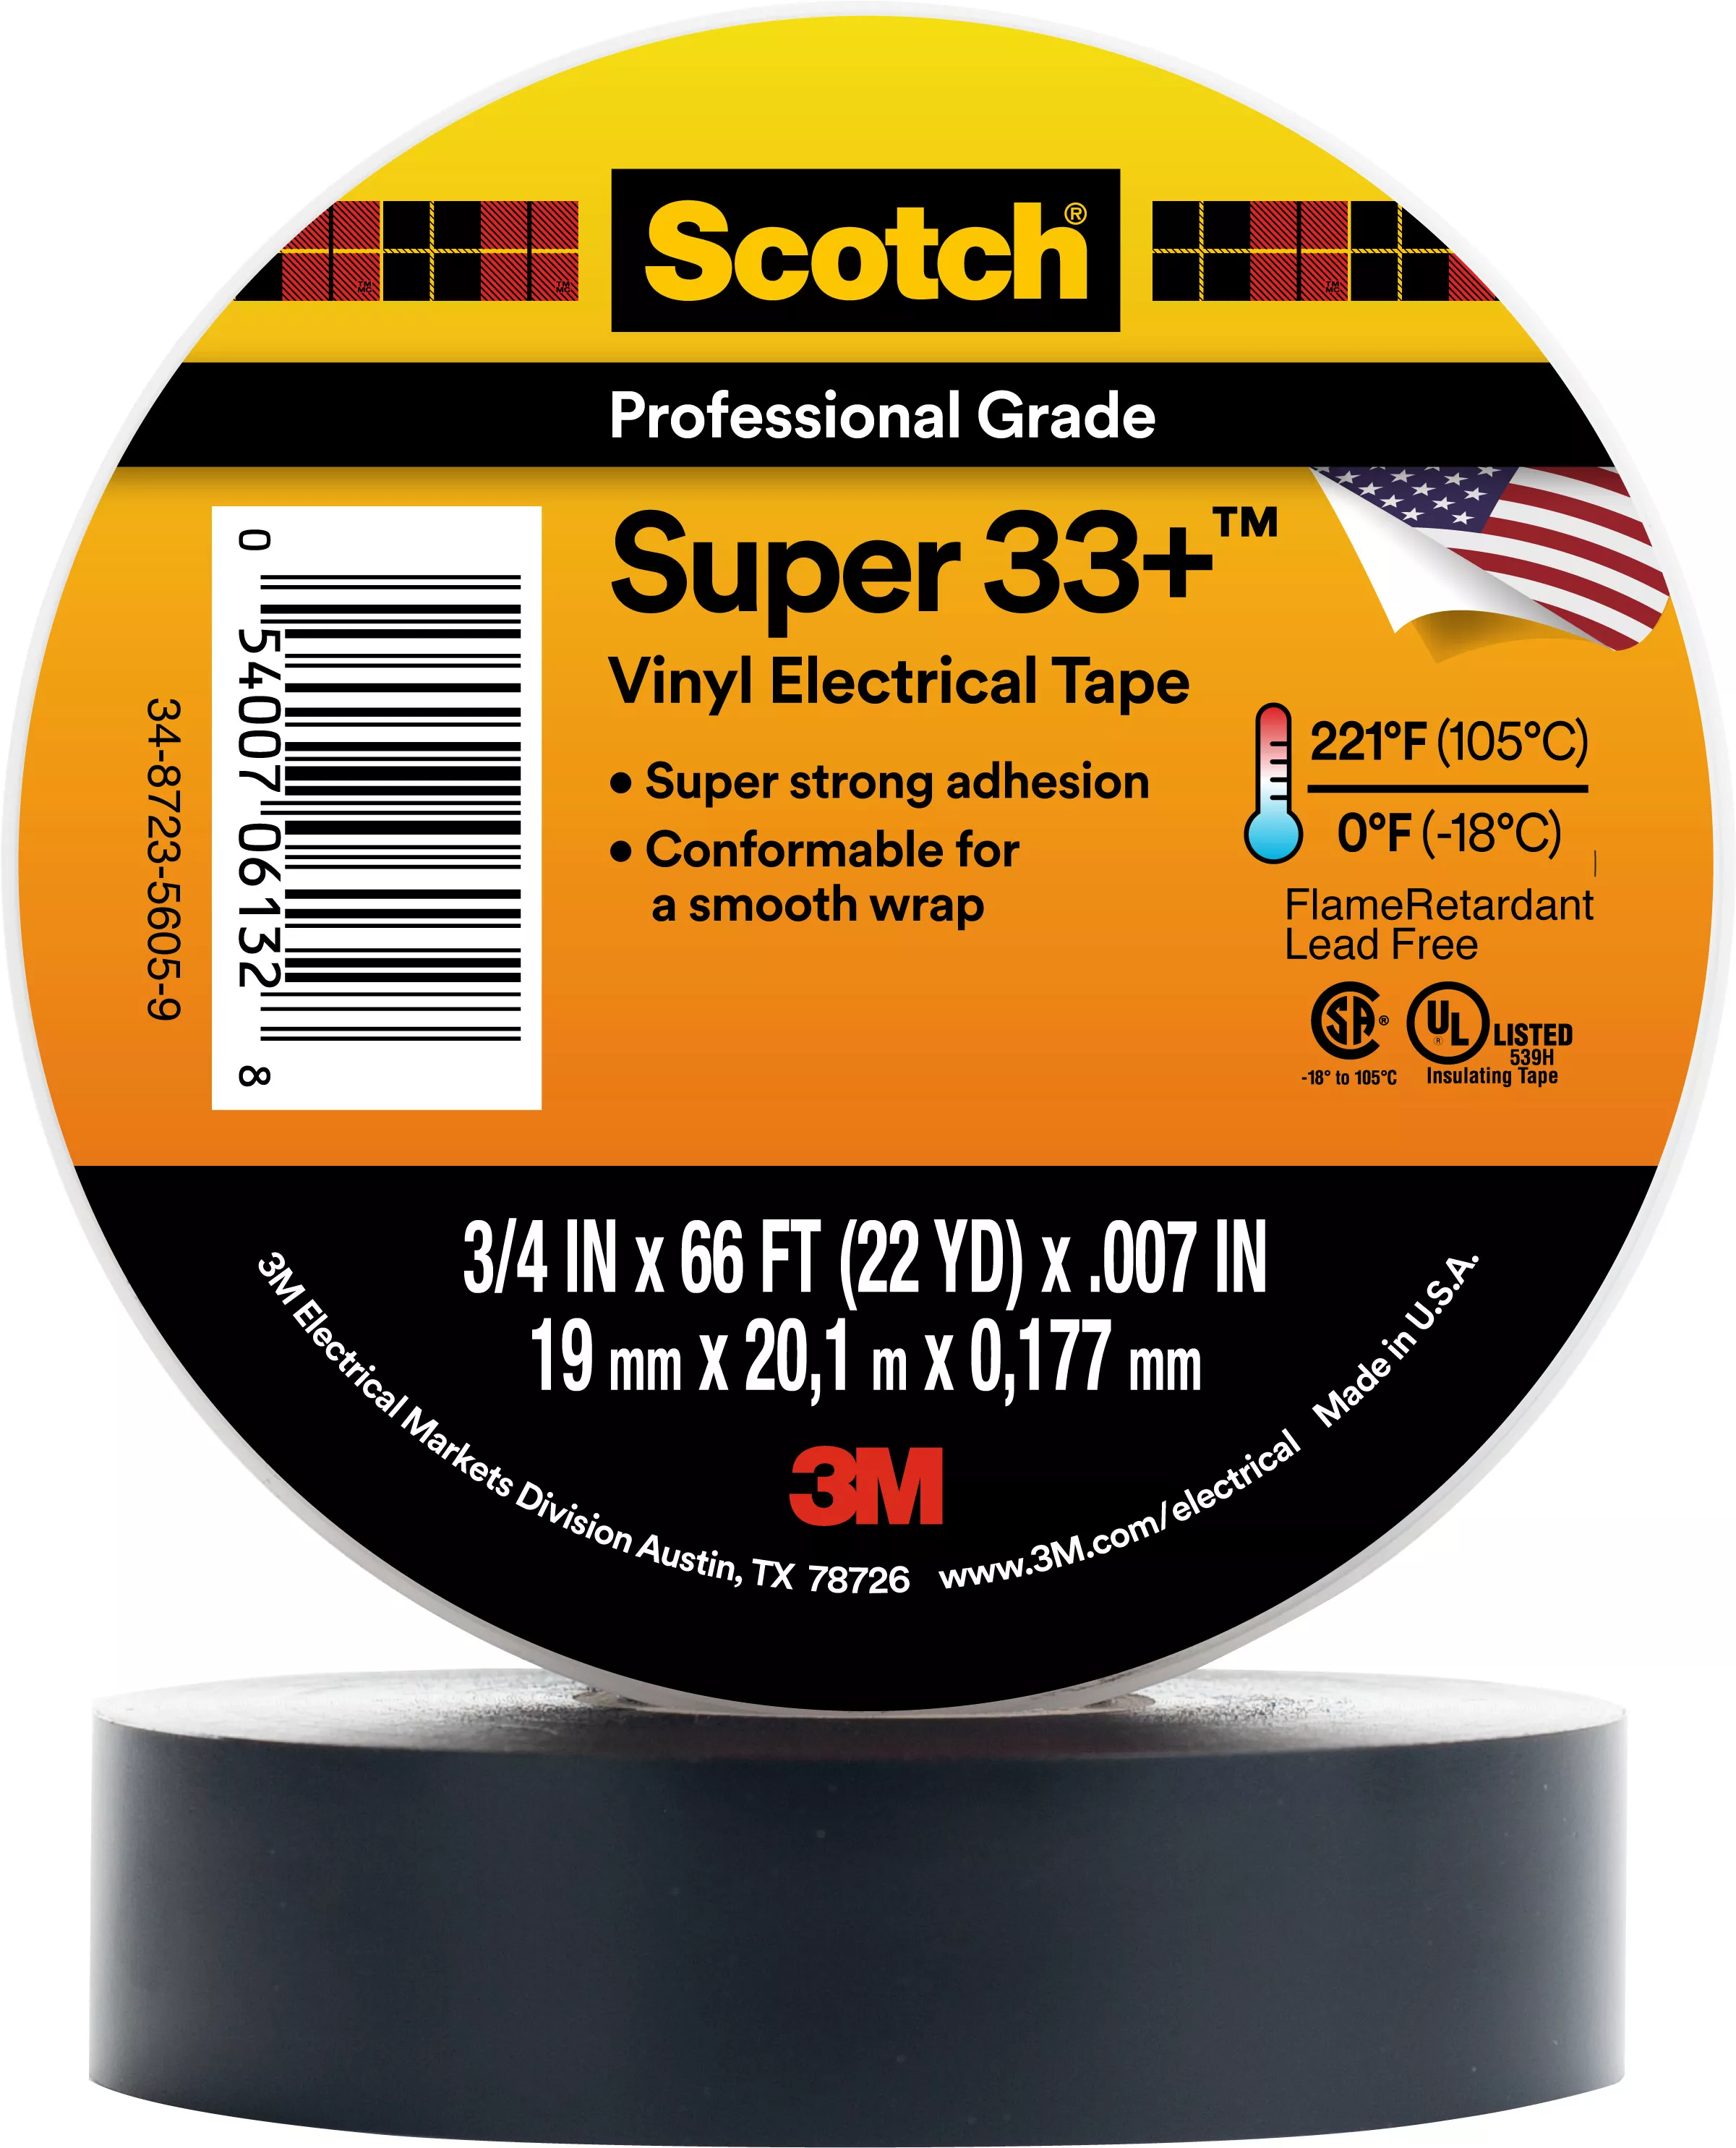 SKU 7010349613 | Scotch® Super 33+ Vinyl Electrical Tape